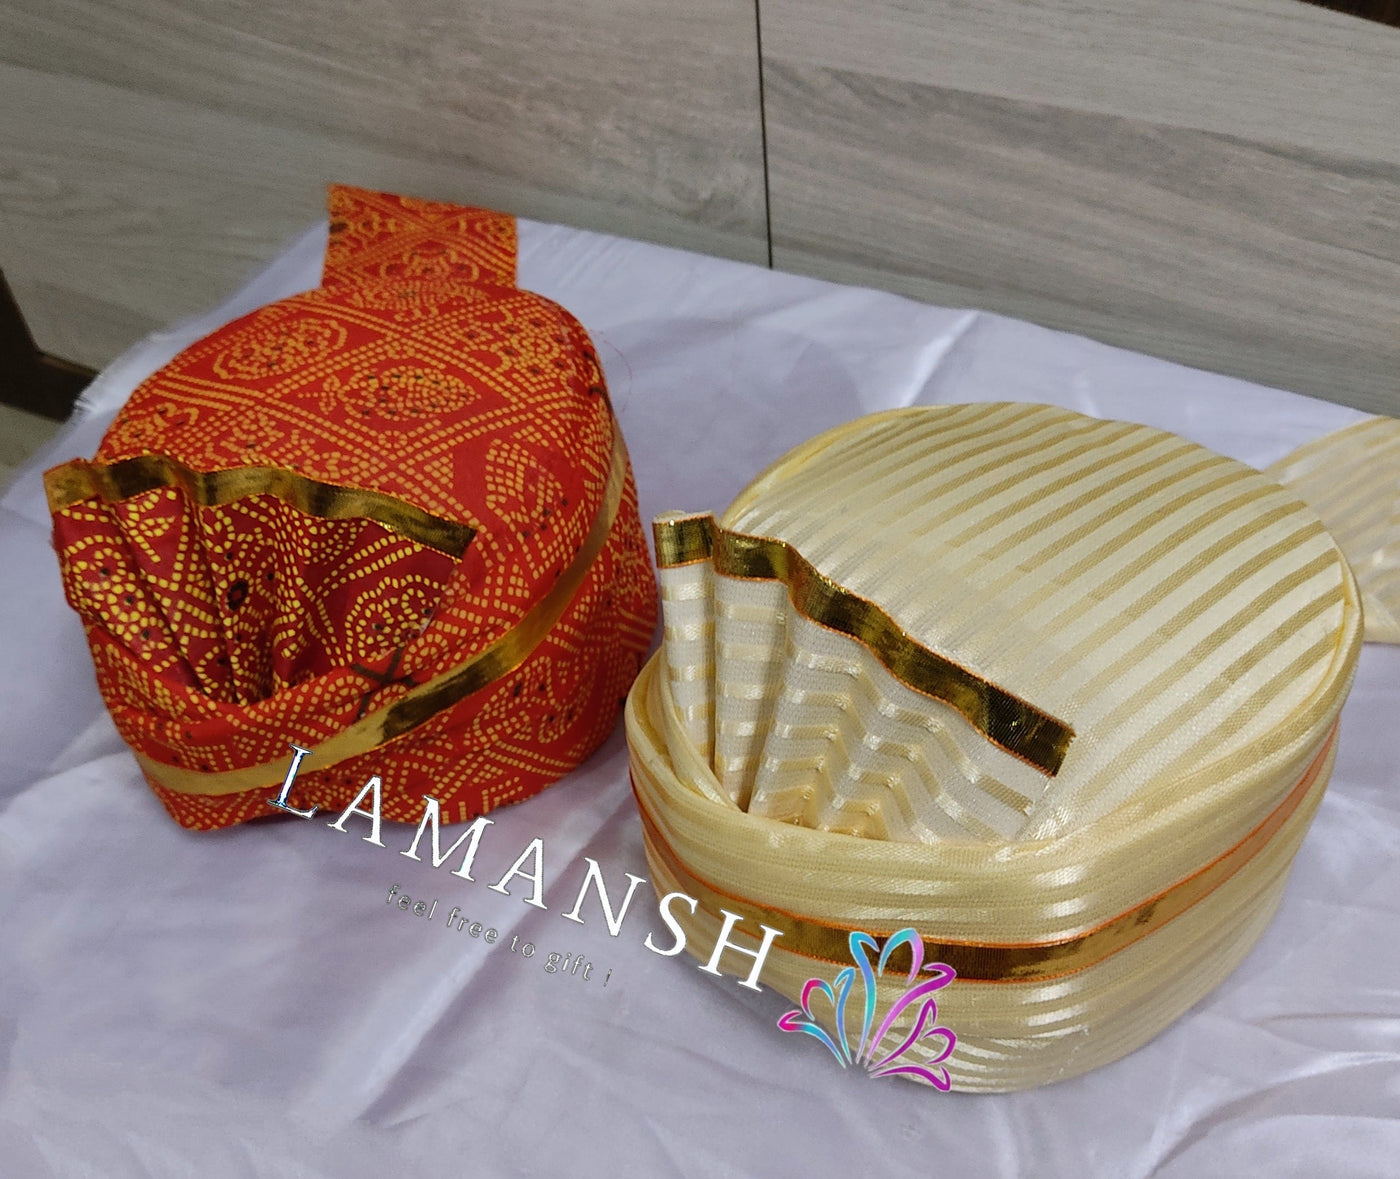 LAMANSH safa pagdi Pack of 20 LAMANSH Pack of 20 ( 10 Chunri + 10 White ) Readymade Safa Pagdi Turban for Guests Barati / Pagdi with extra cloth to back